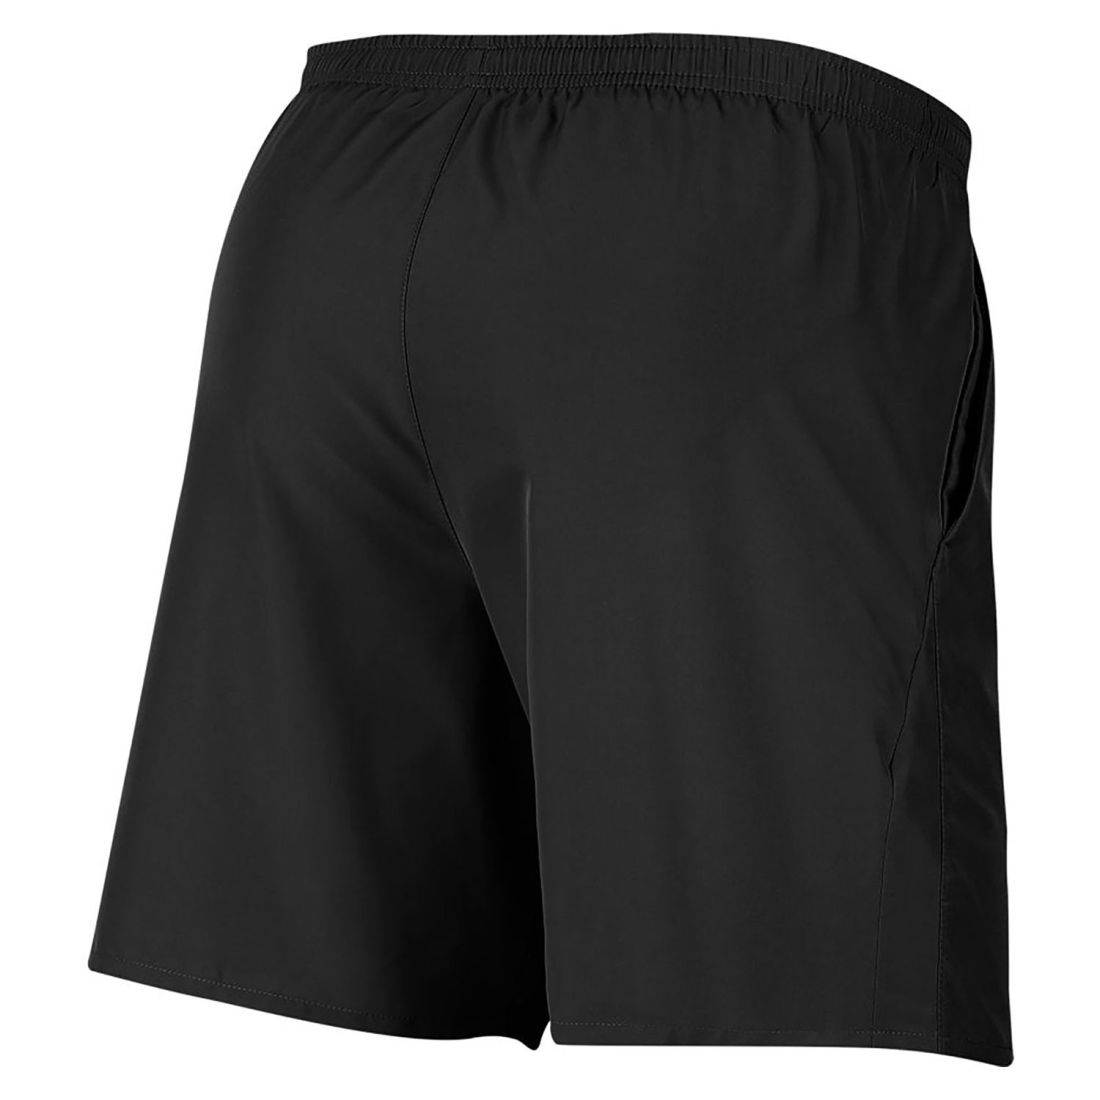 Мужские беговые шорты Nike Men's 7&quot; Running Shorts